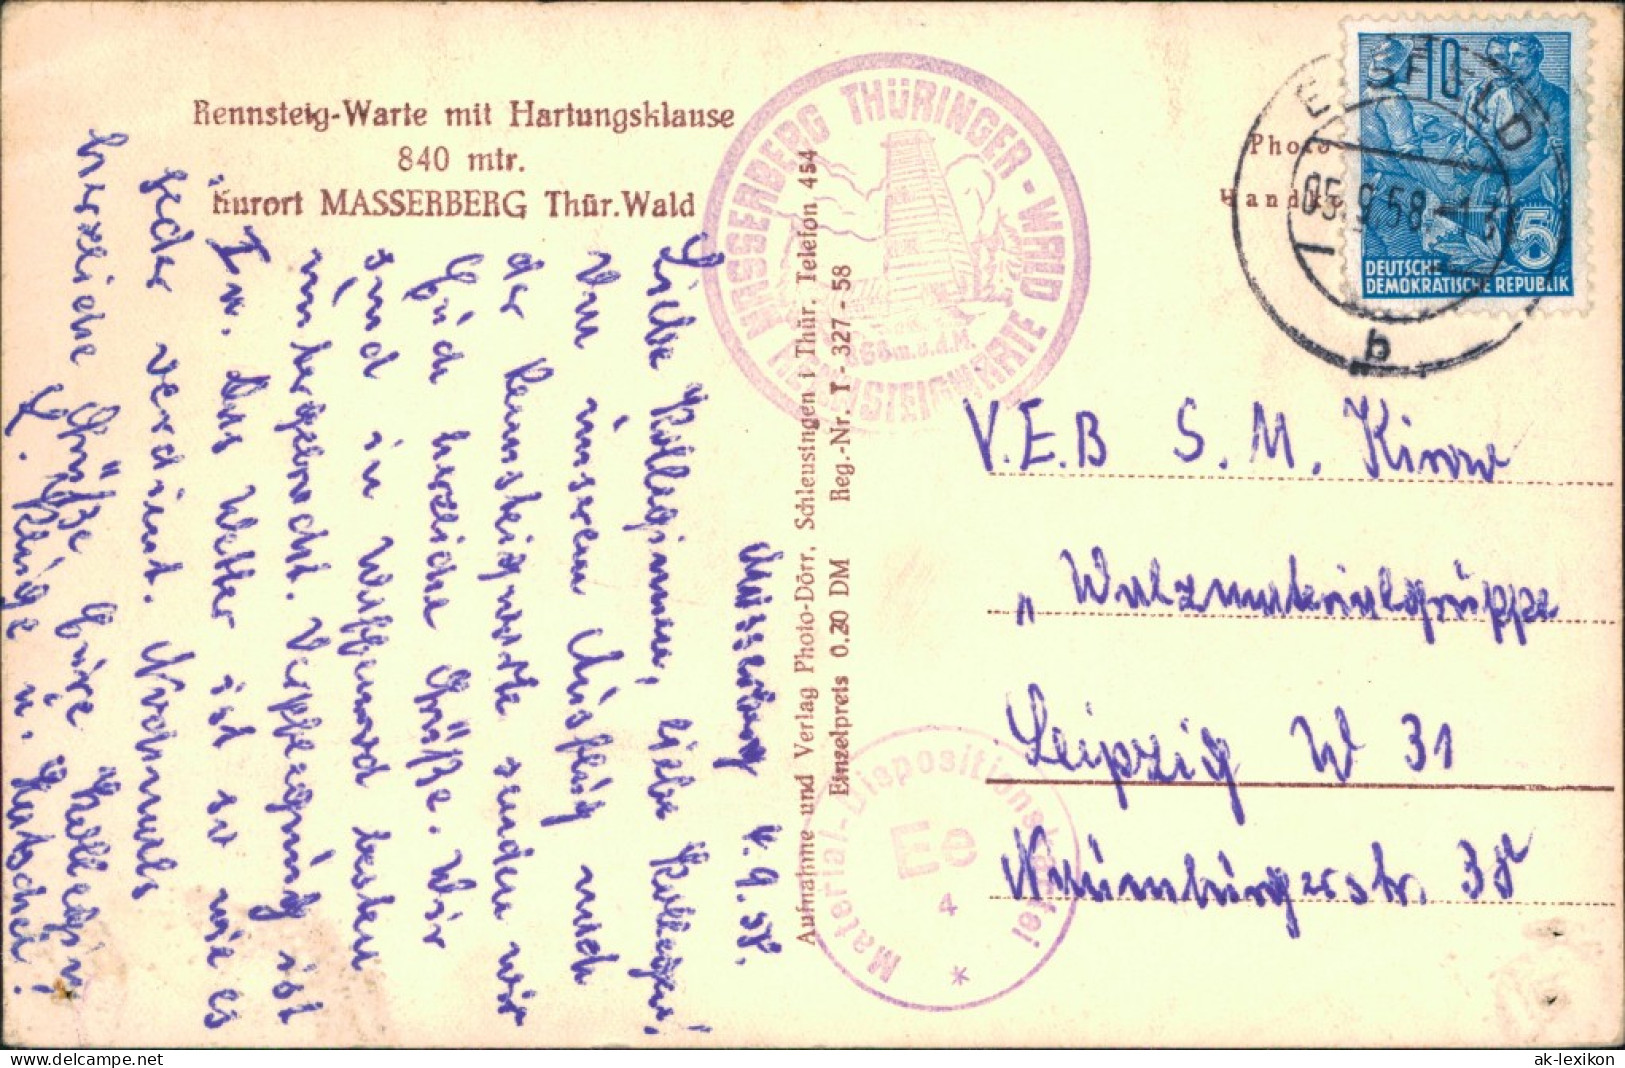 Ansichtskarte Masserberg Rennsteigwarte-Hartungsklause 1958 - Masserberg